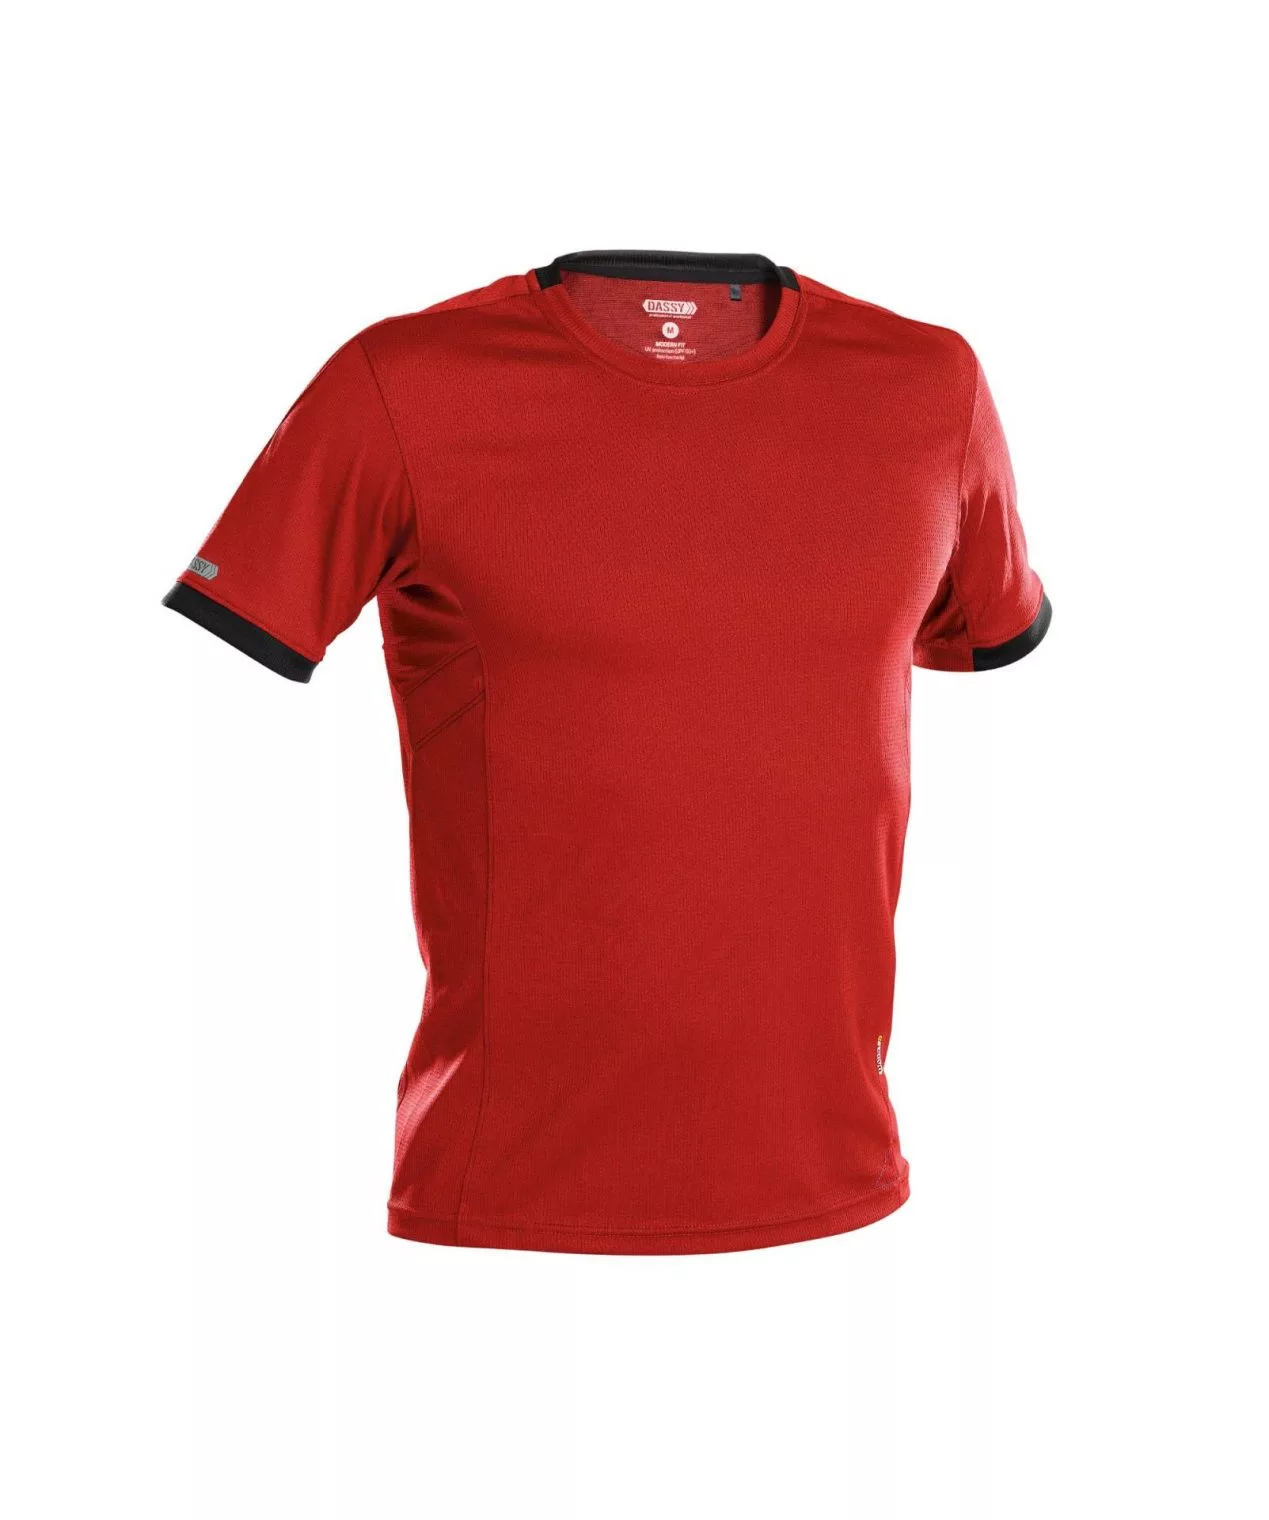 Dassy Nexus Herren T-Shirt (Uv-Sonnenschutz)